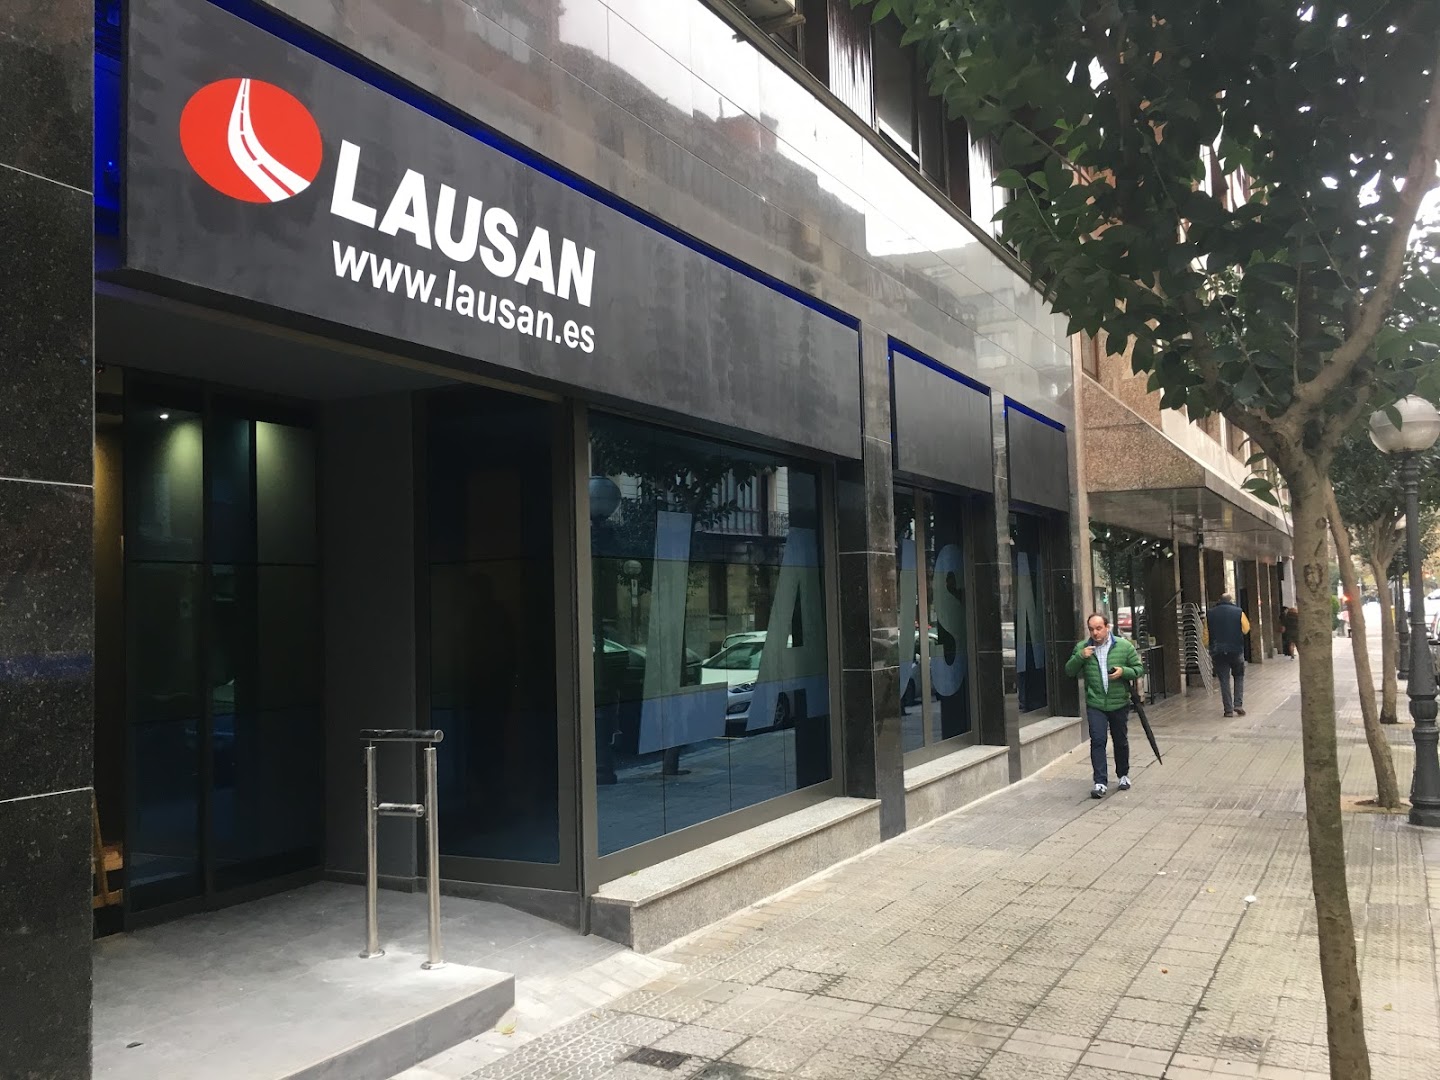 LAUSAN Bilbao (Oficinas centrales)